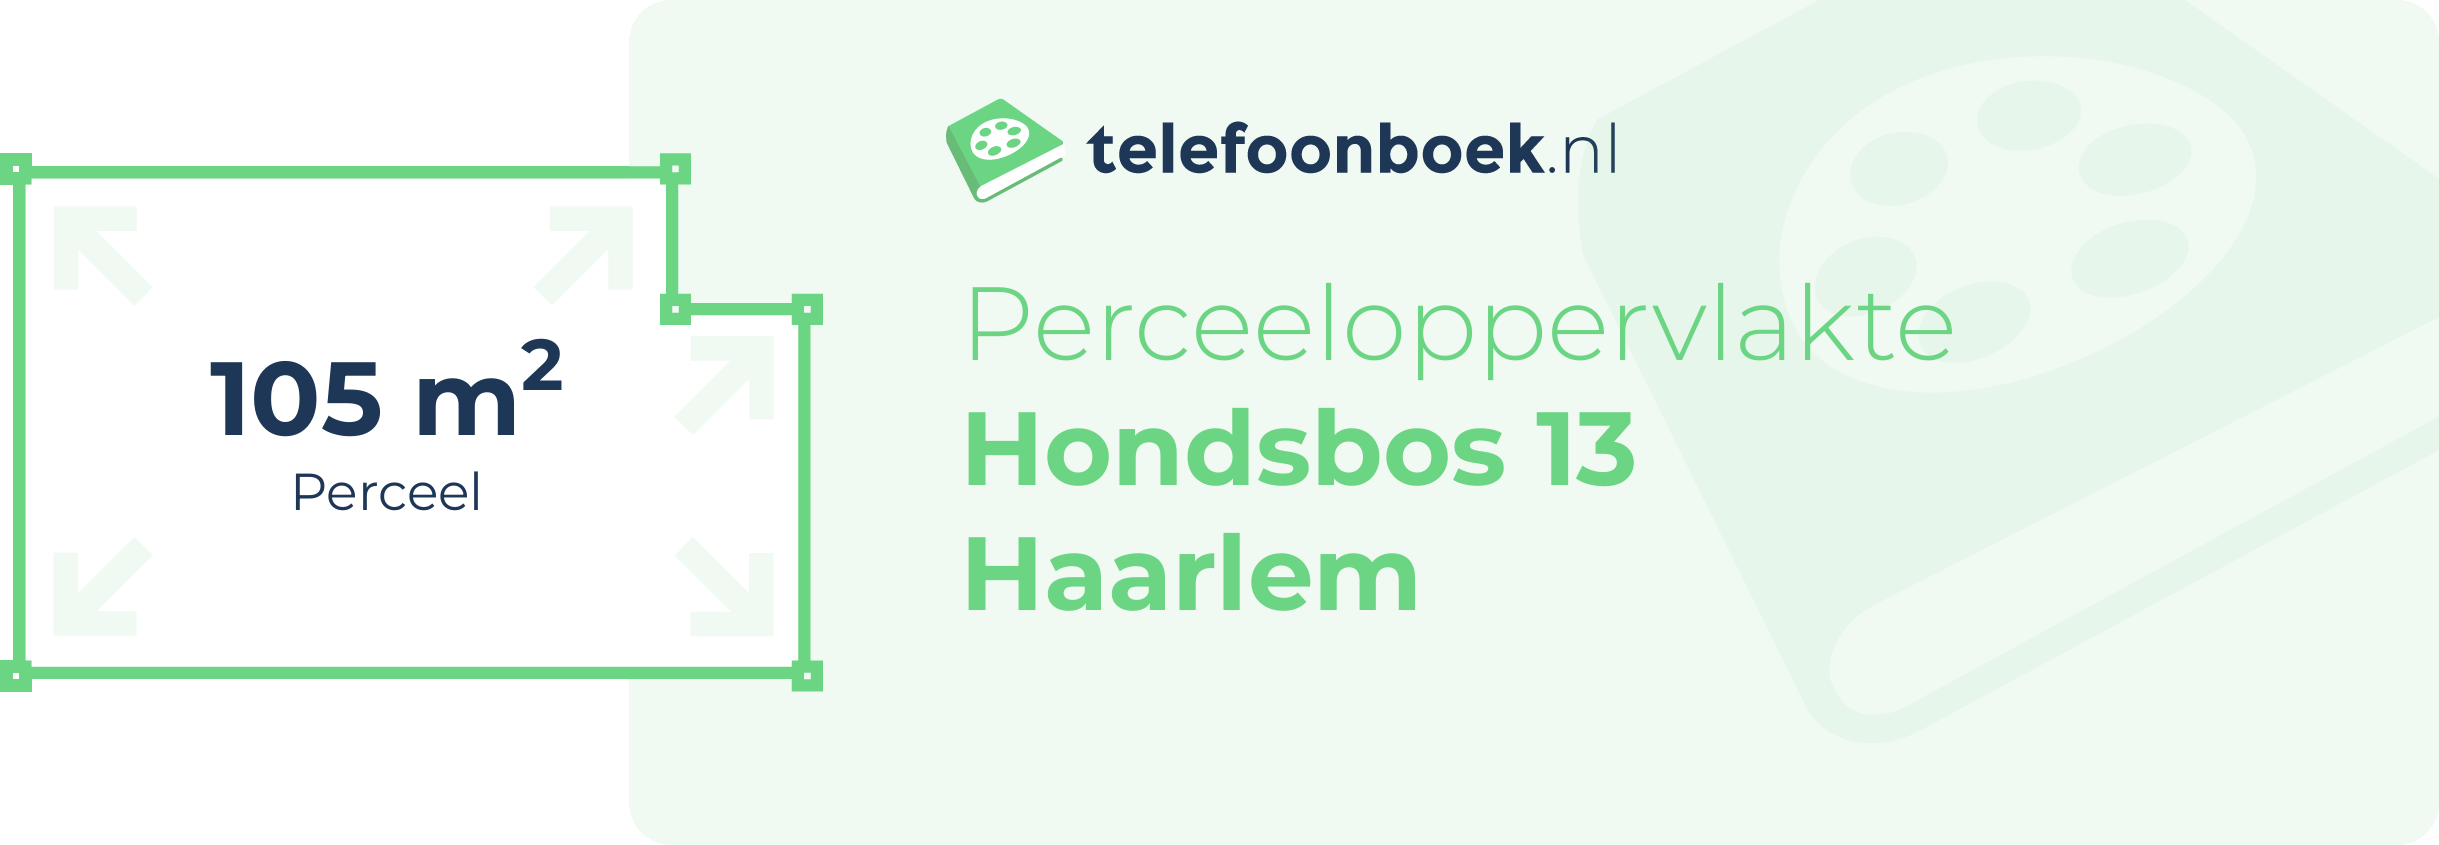 Perceeloppervlakte Hondsbos 13 Haarlem